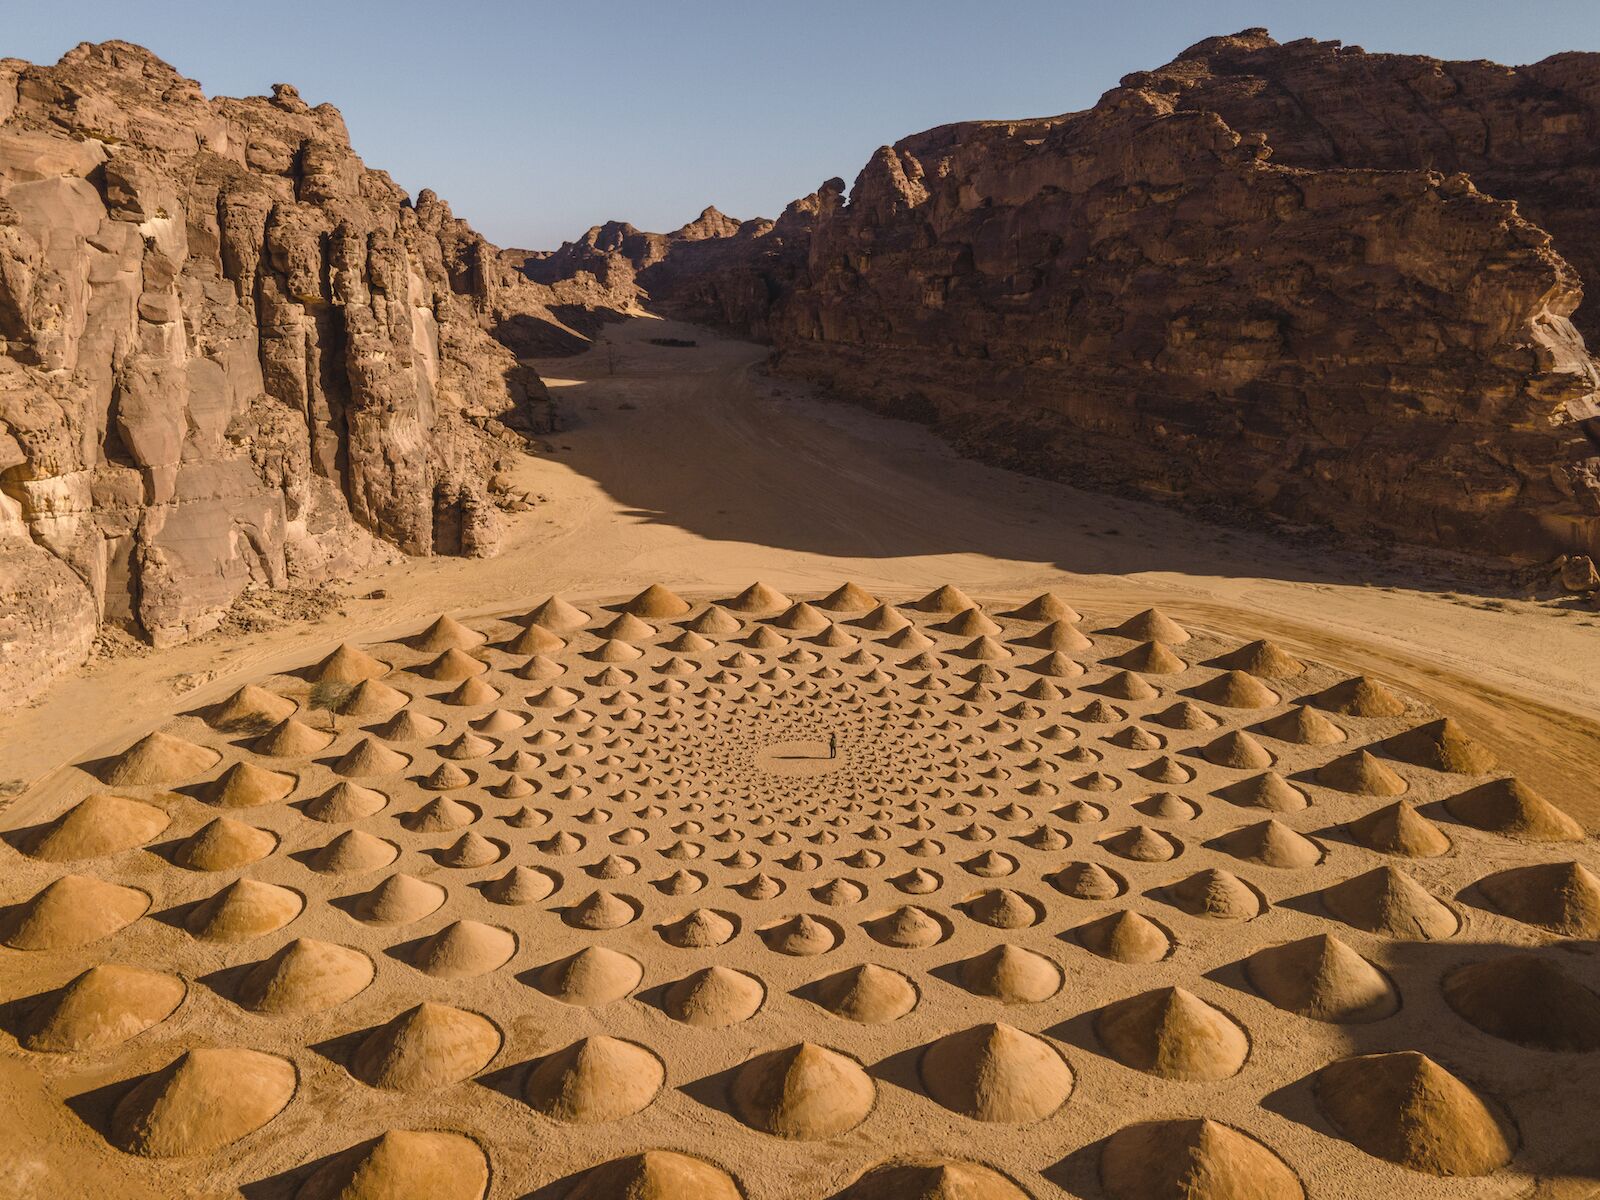 Art installation made of sand in the Saudi Arabian desert for Desert X 2022.